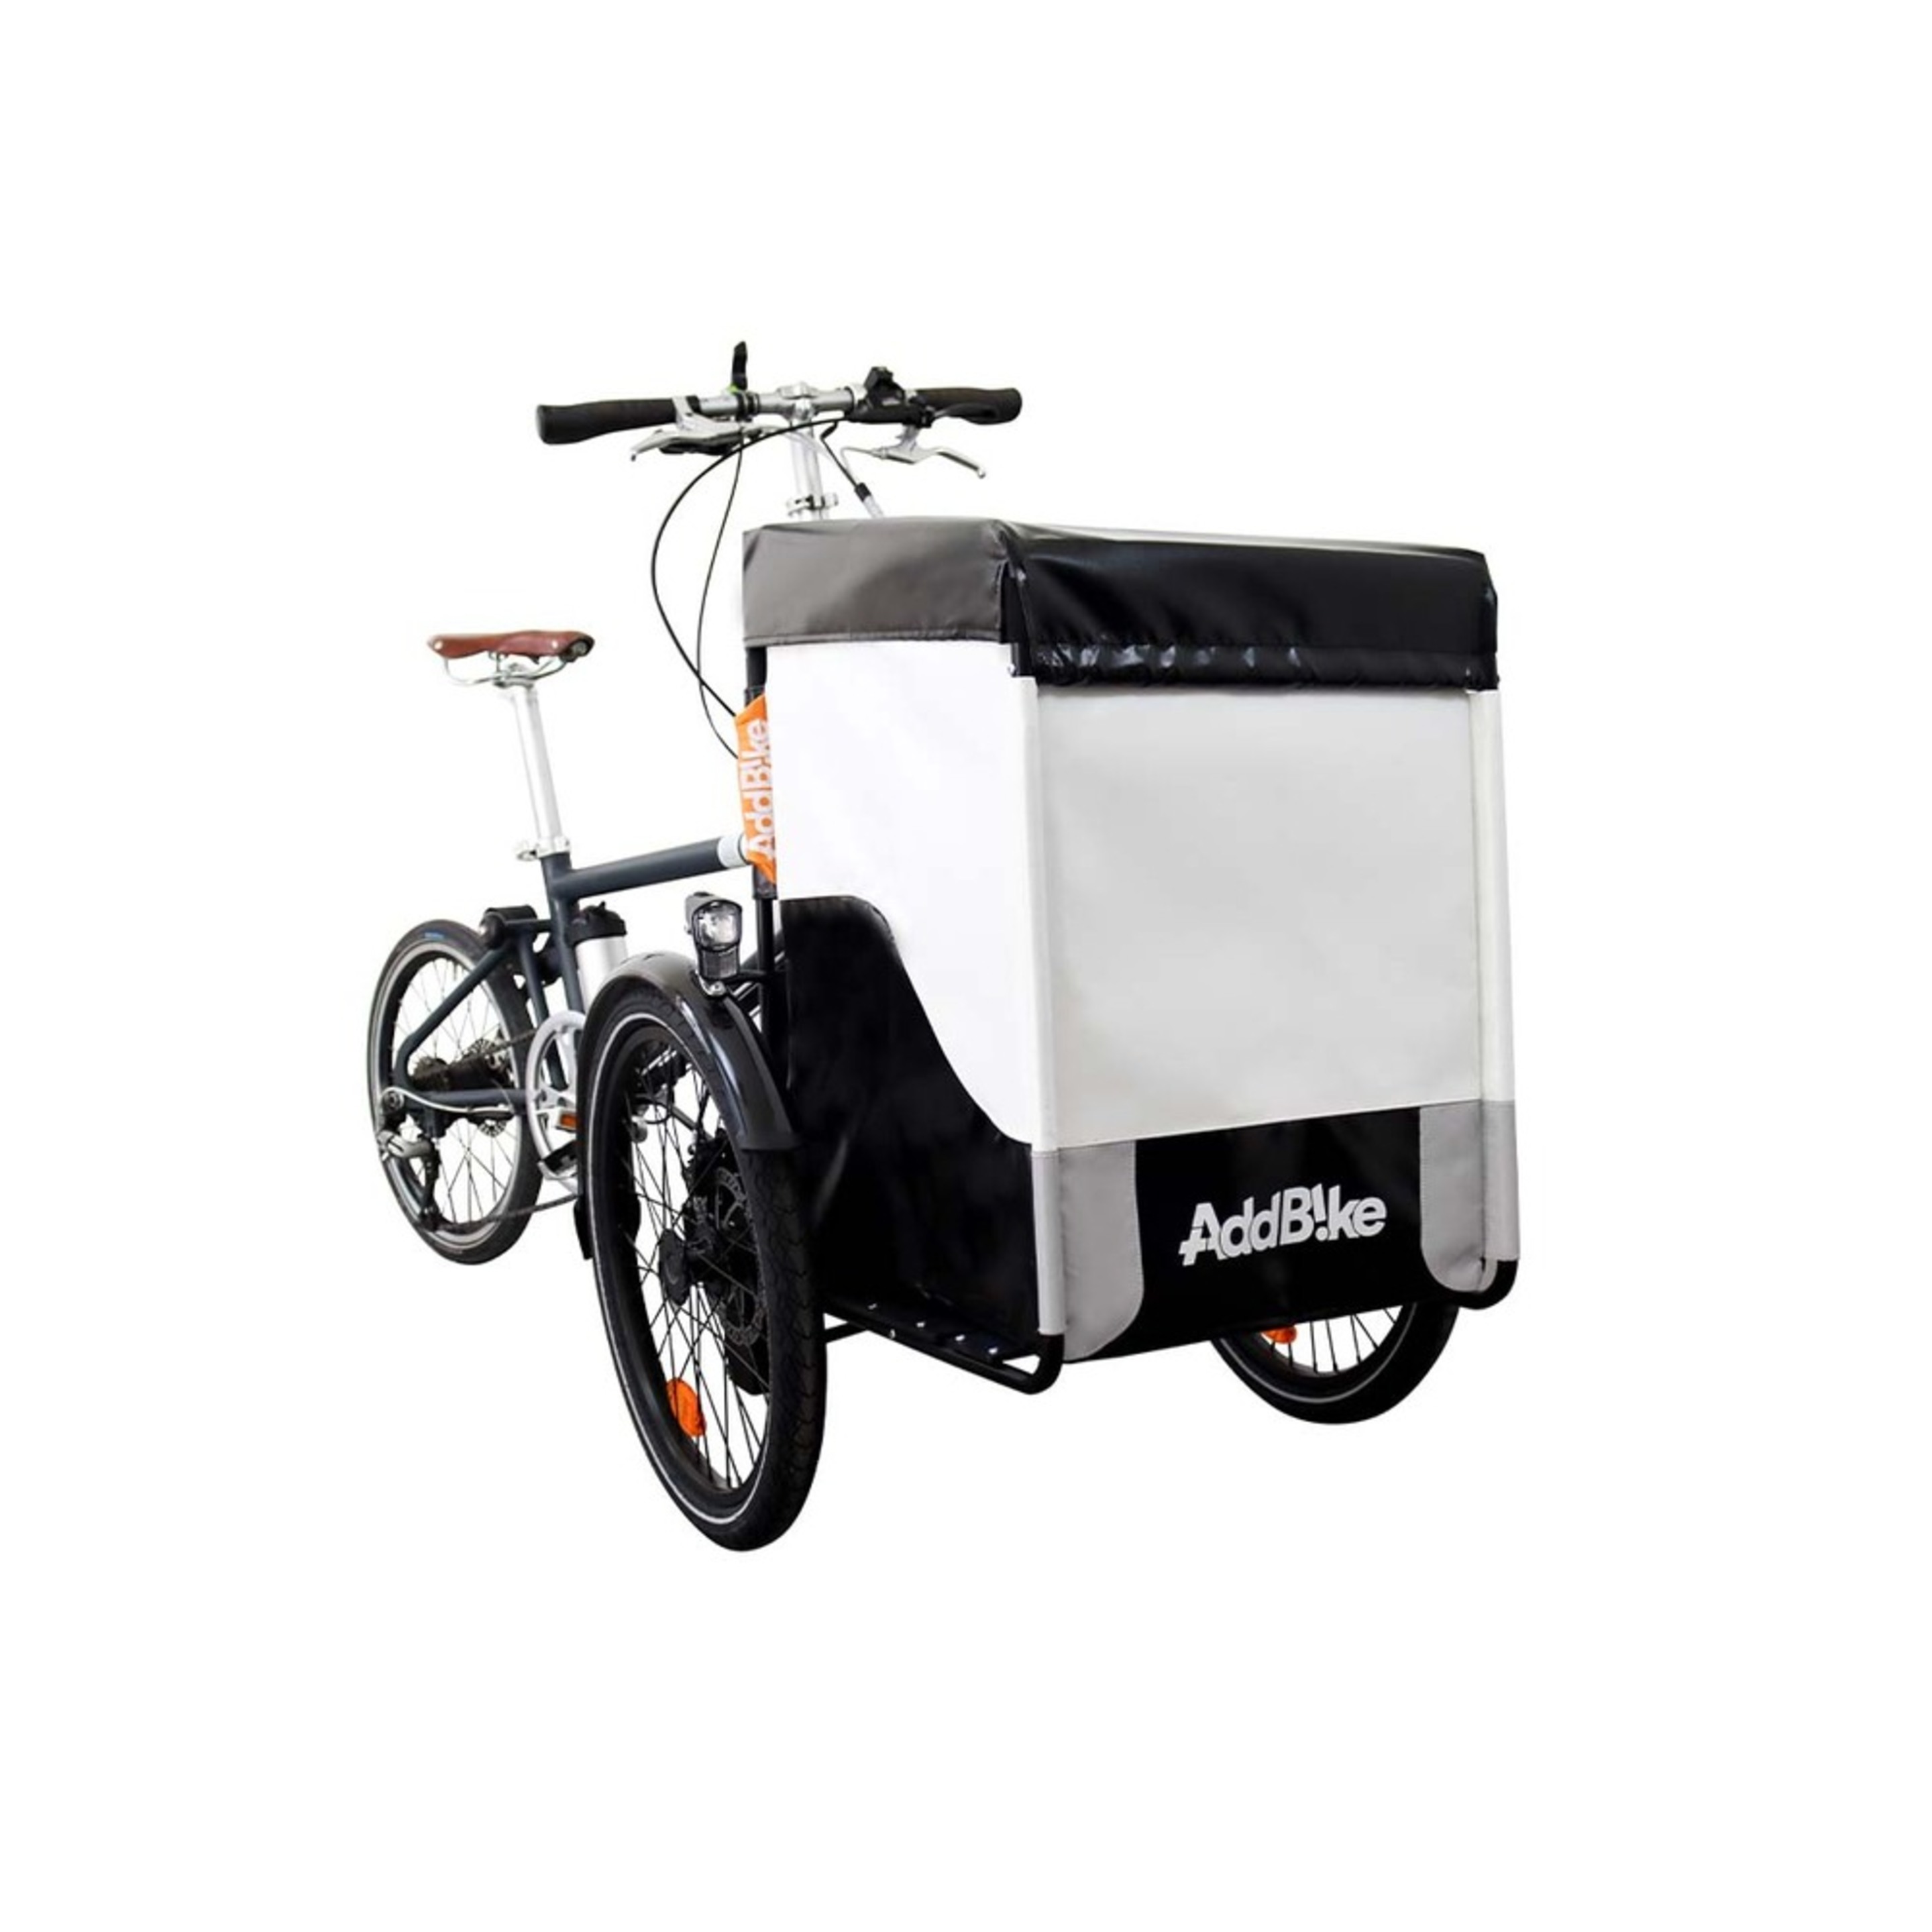 Kit Frontal: Transporte De Carga - Addbike Box Kit - Cinzento/Preto - Kit frontal: Transporte de carga | Sport Zone MKP